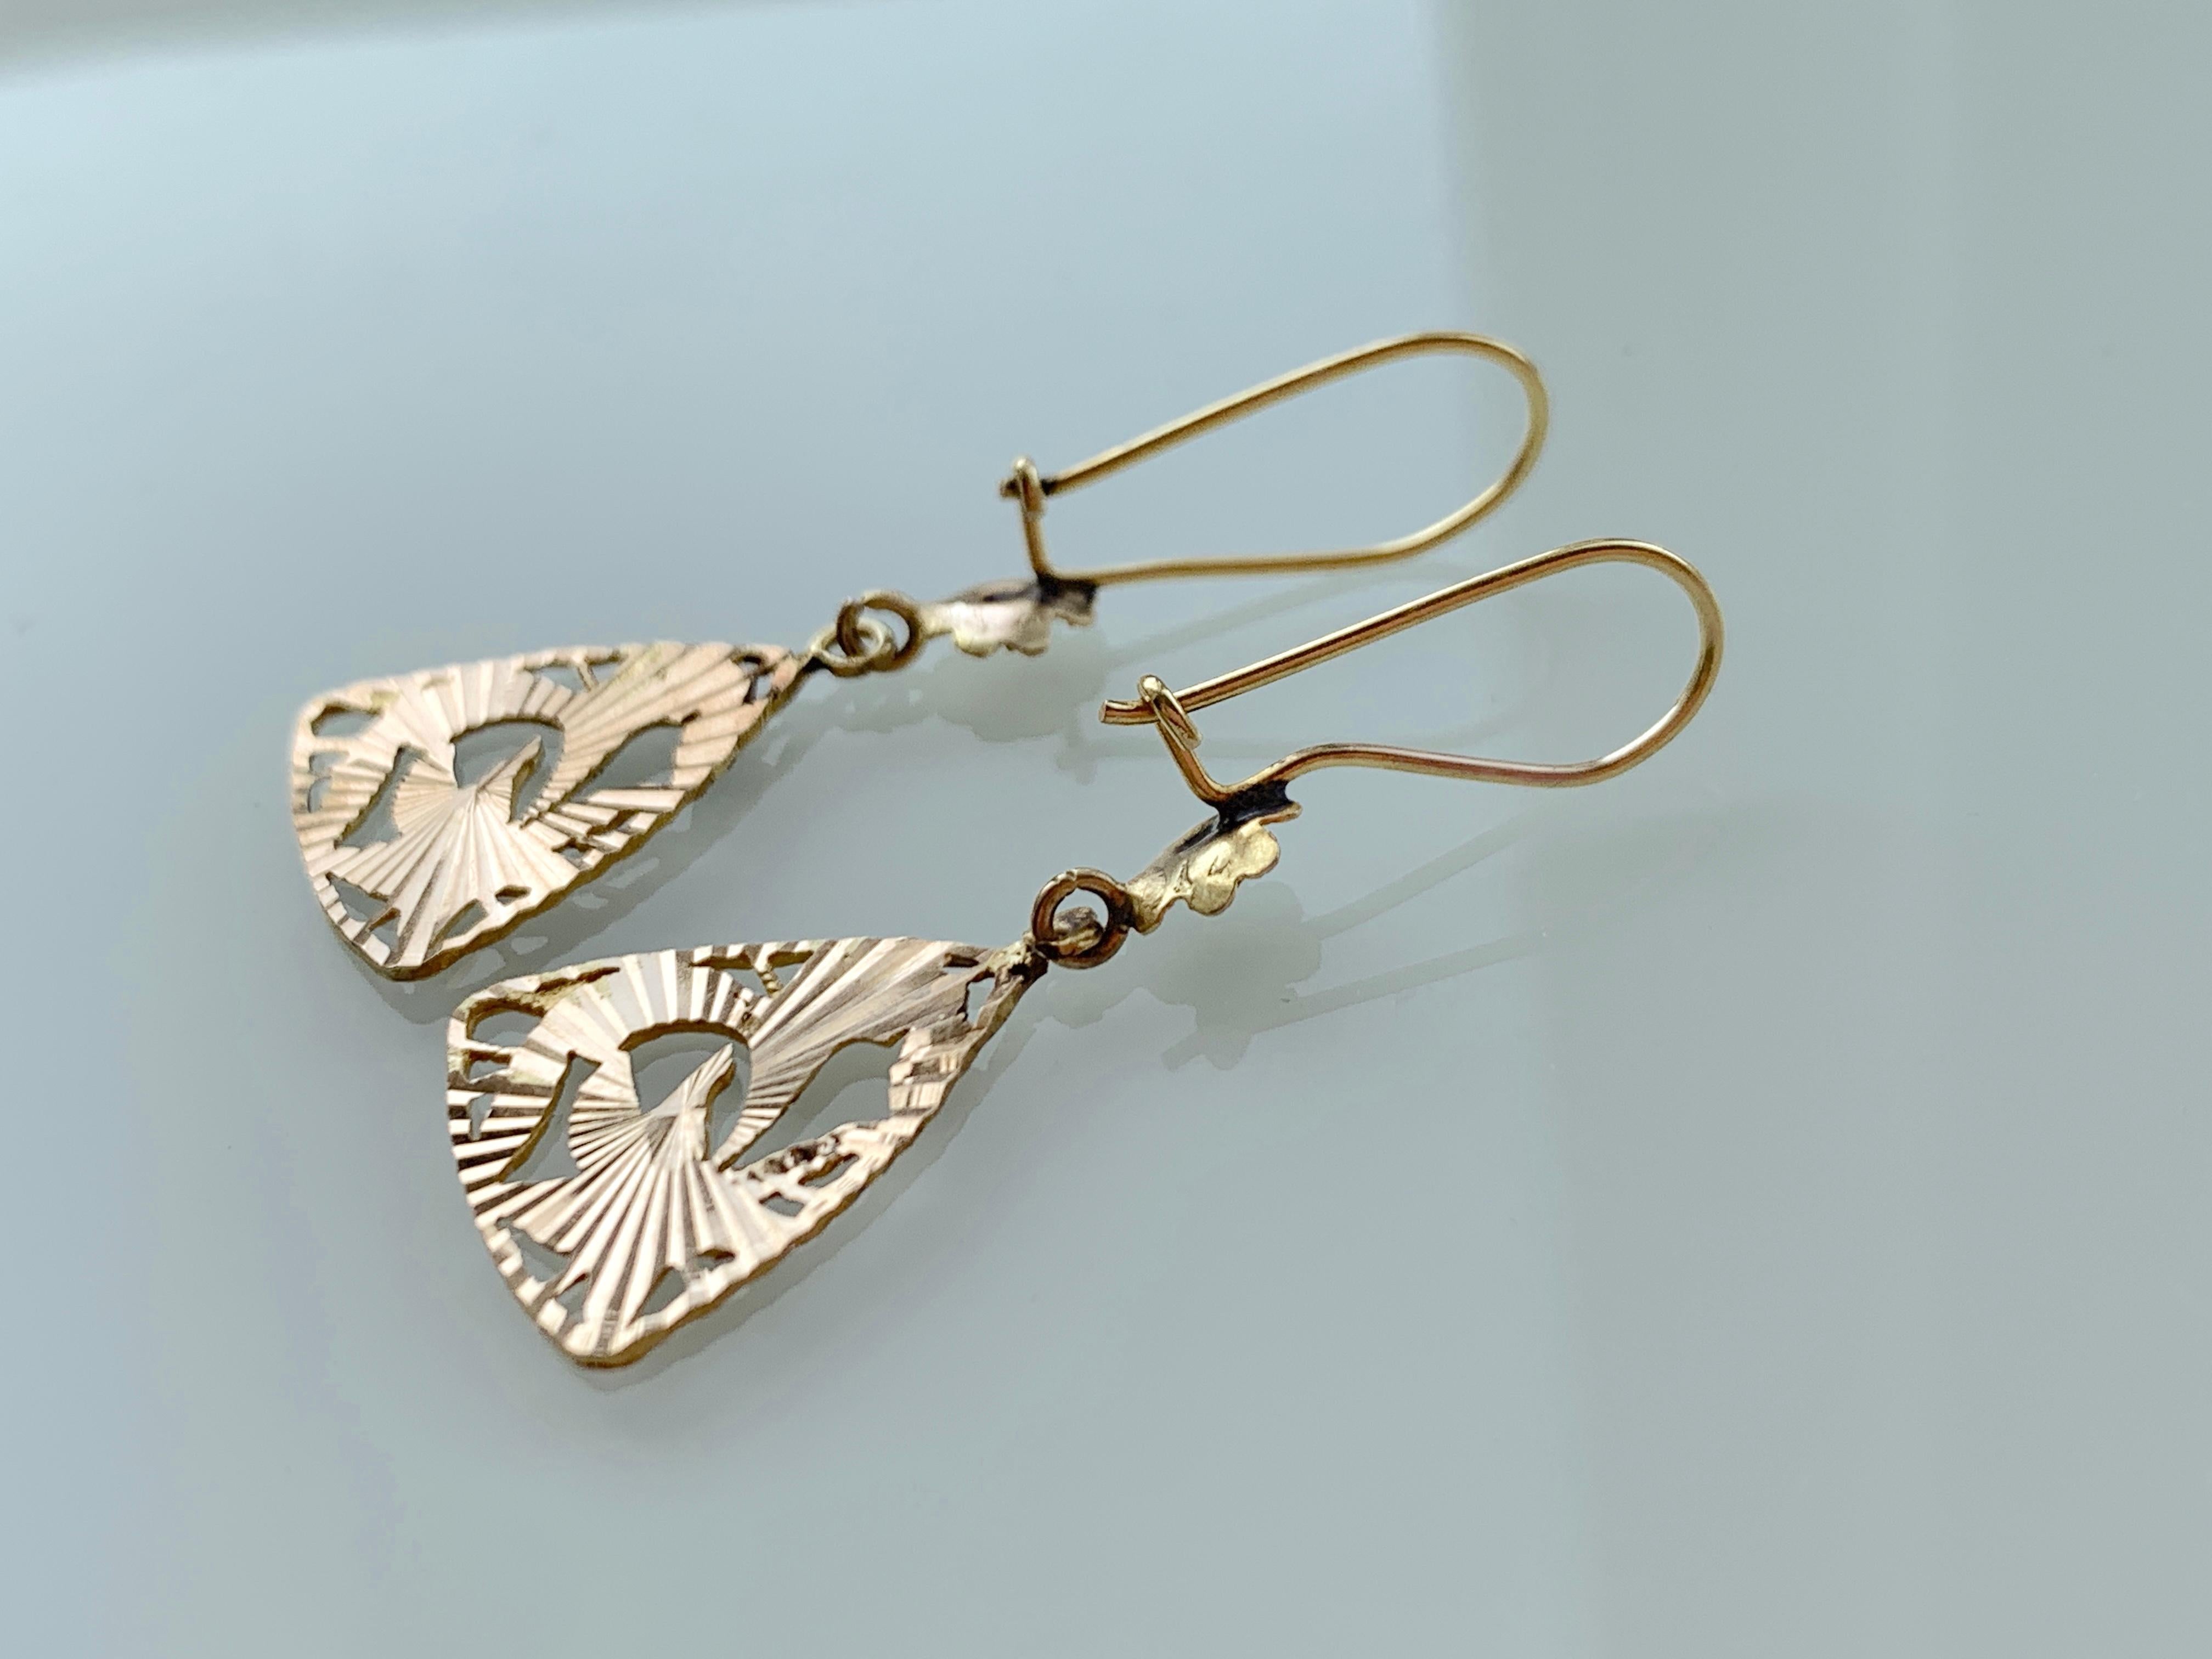 Schöne antike 14ct Gold Ohrringe
Tropisches Blumendesign 
mit aufstrebender Goldoberfläche
Licht einfangen.